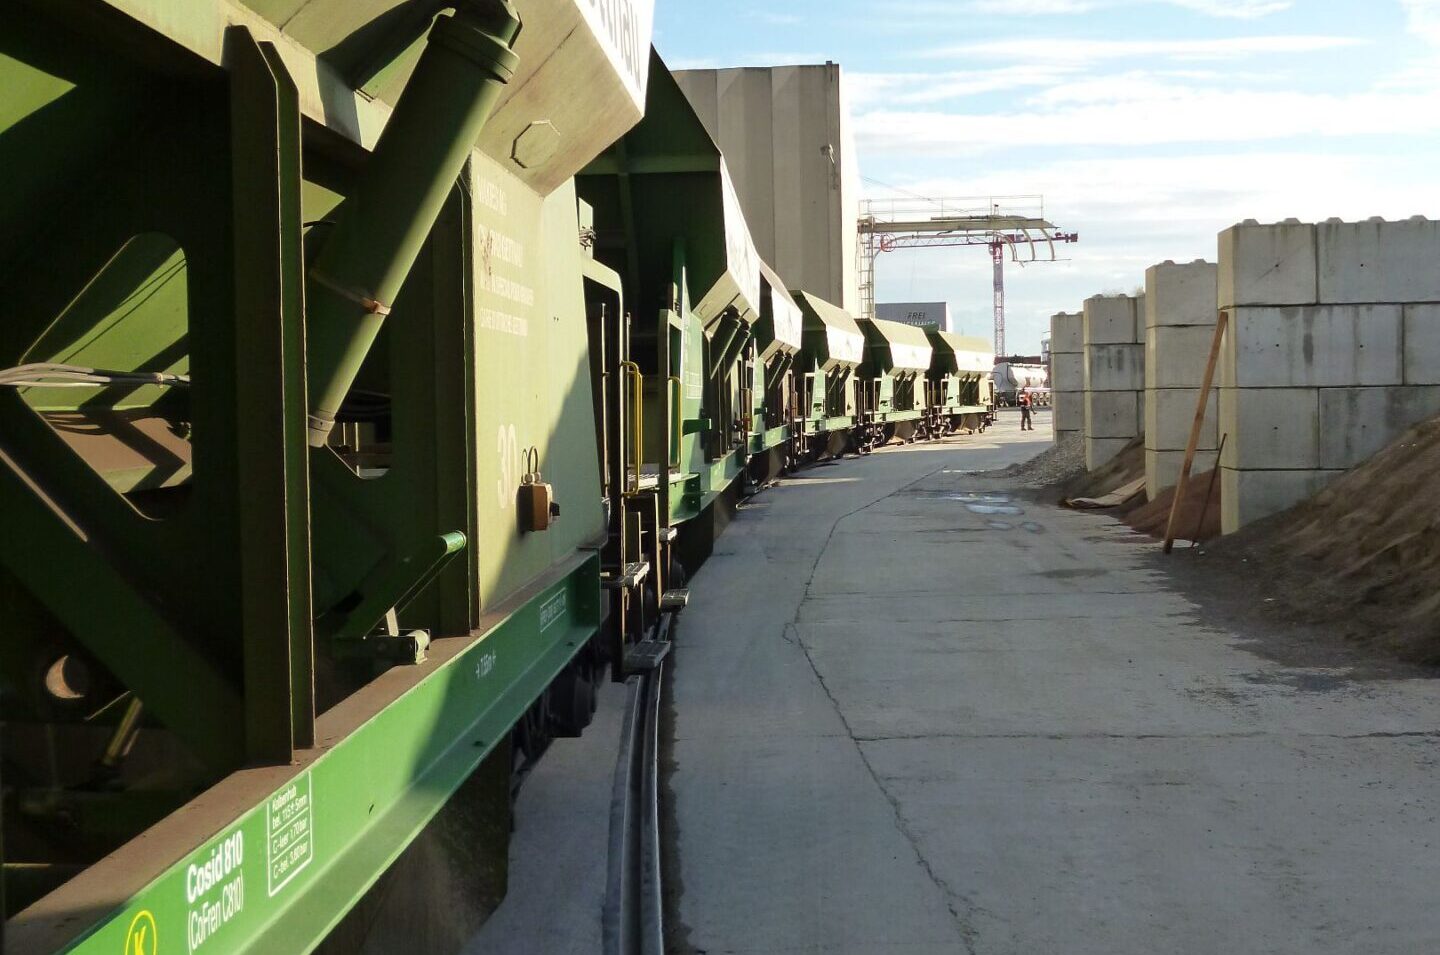 Kies und Zement kommt per Lastzug ins Werk. Das verringert den ökologischen Fussabdruck der saw gruppe.